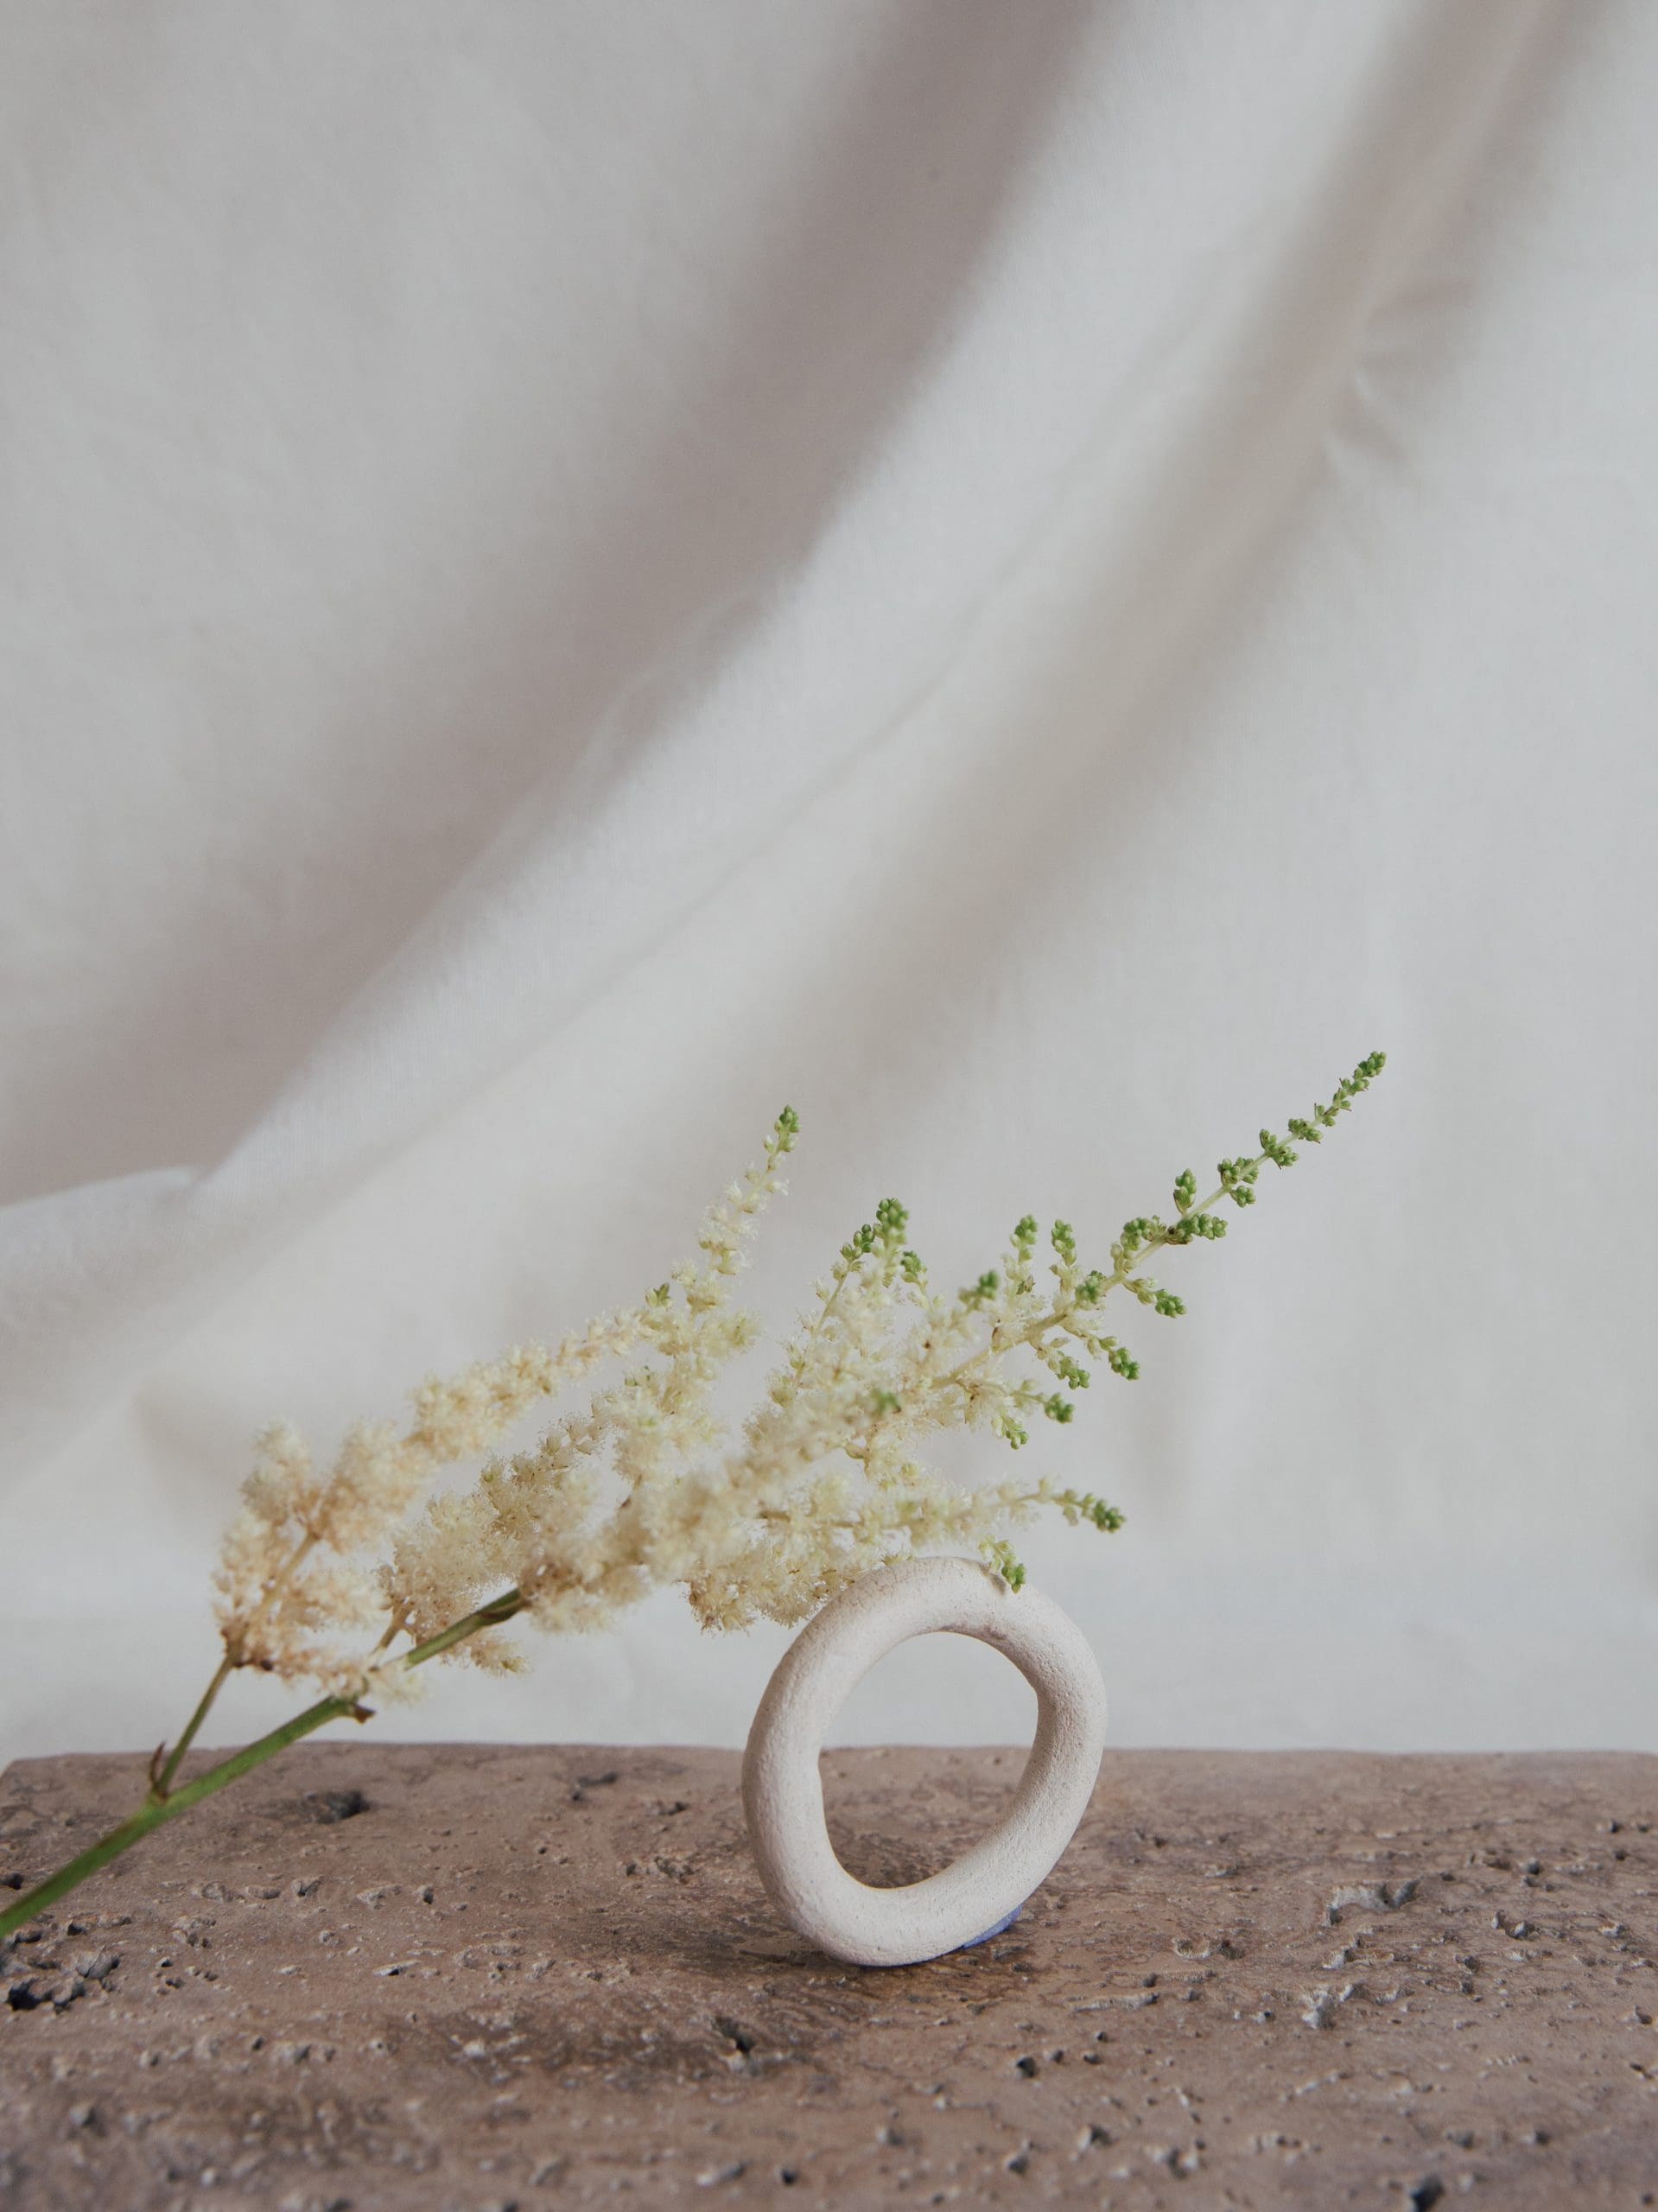 Servicio wedding planner fotografía minimalista elementos naturales